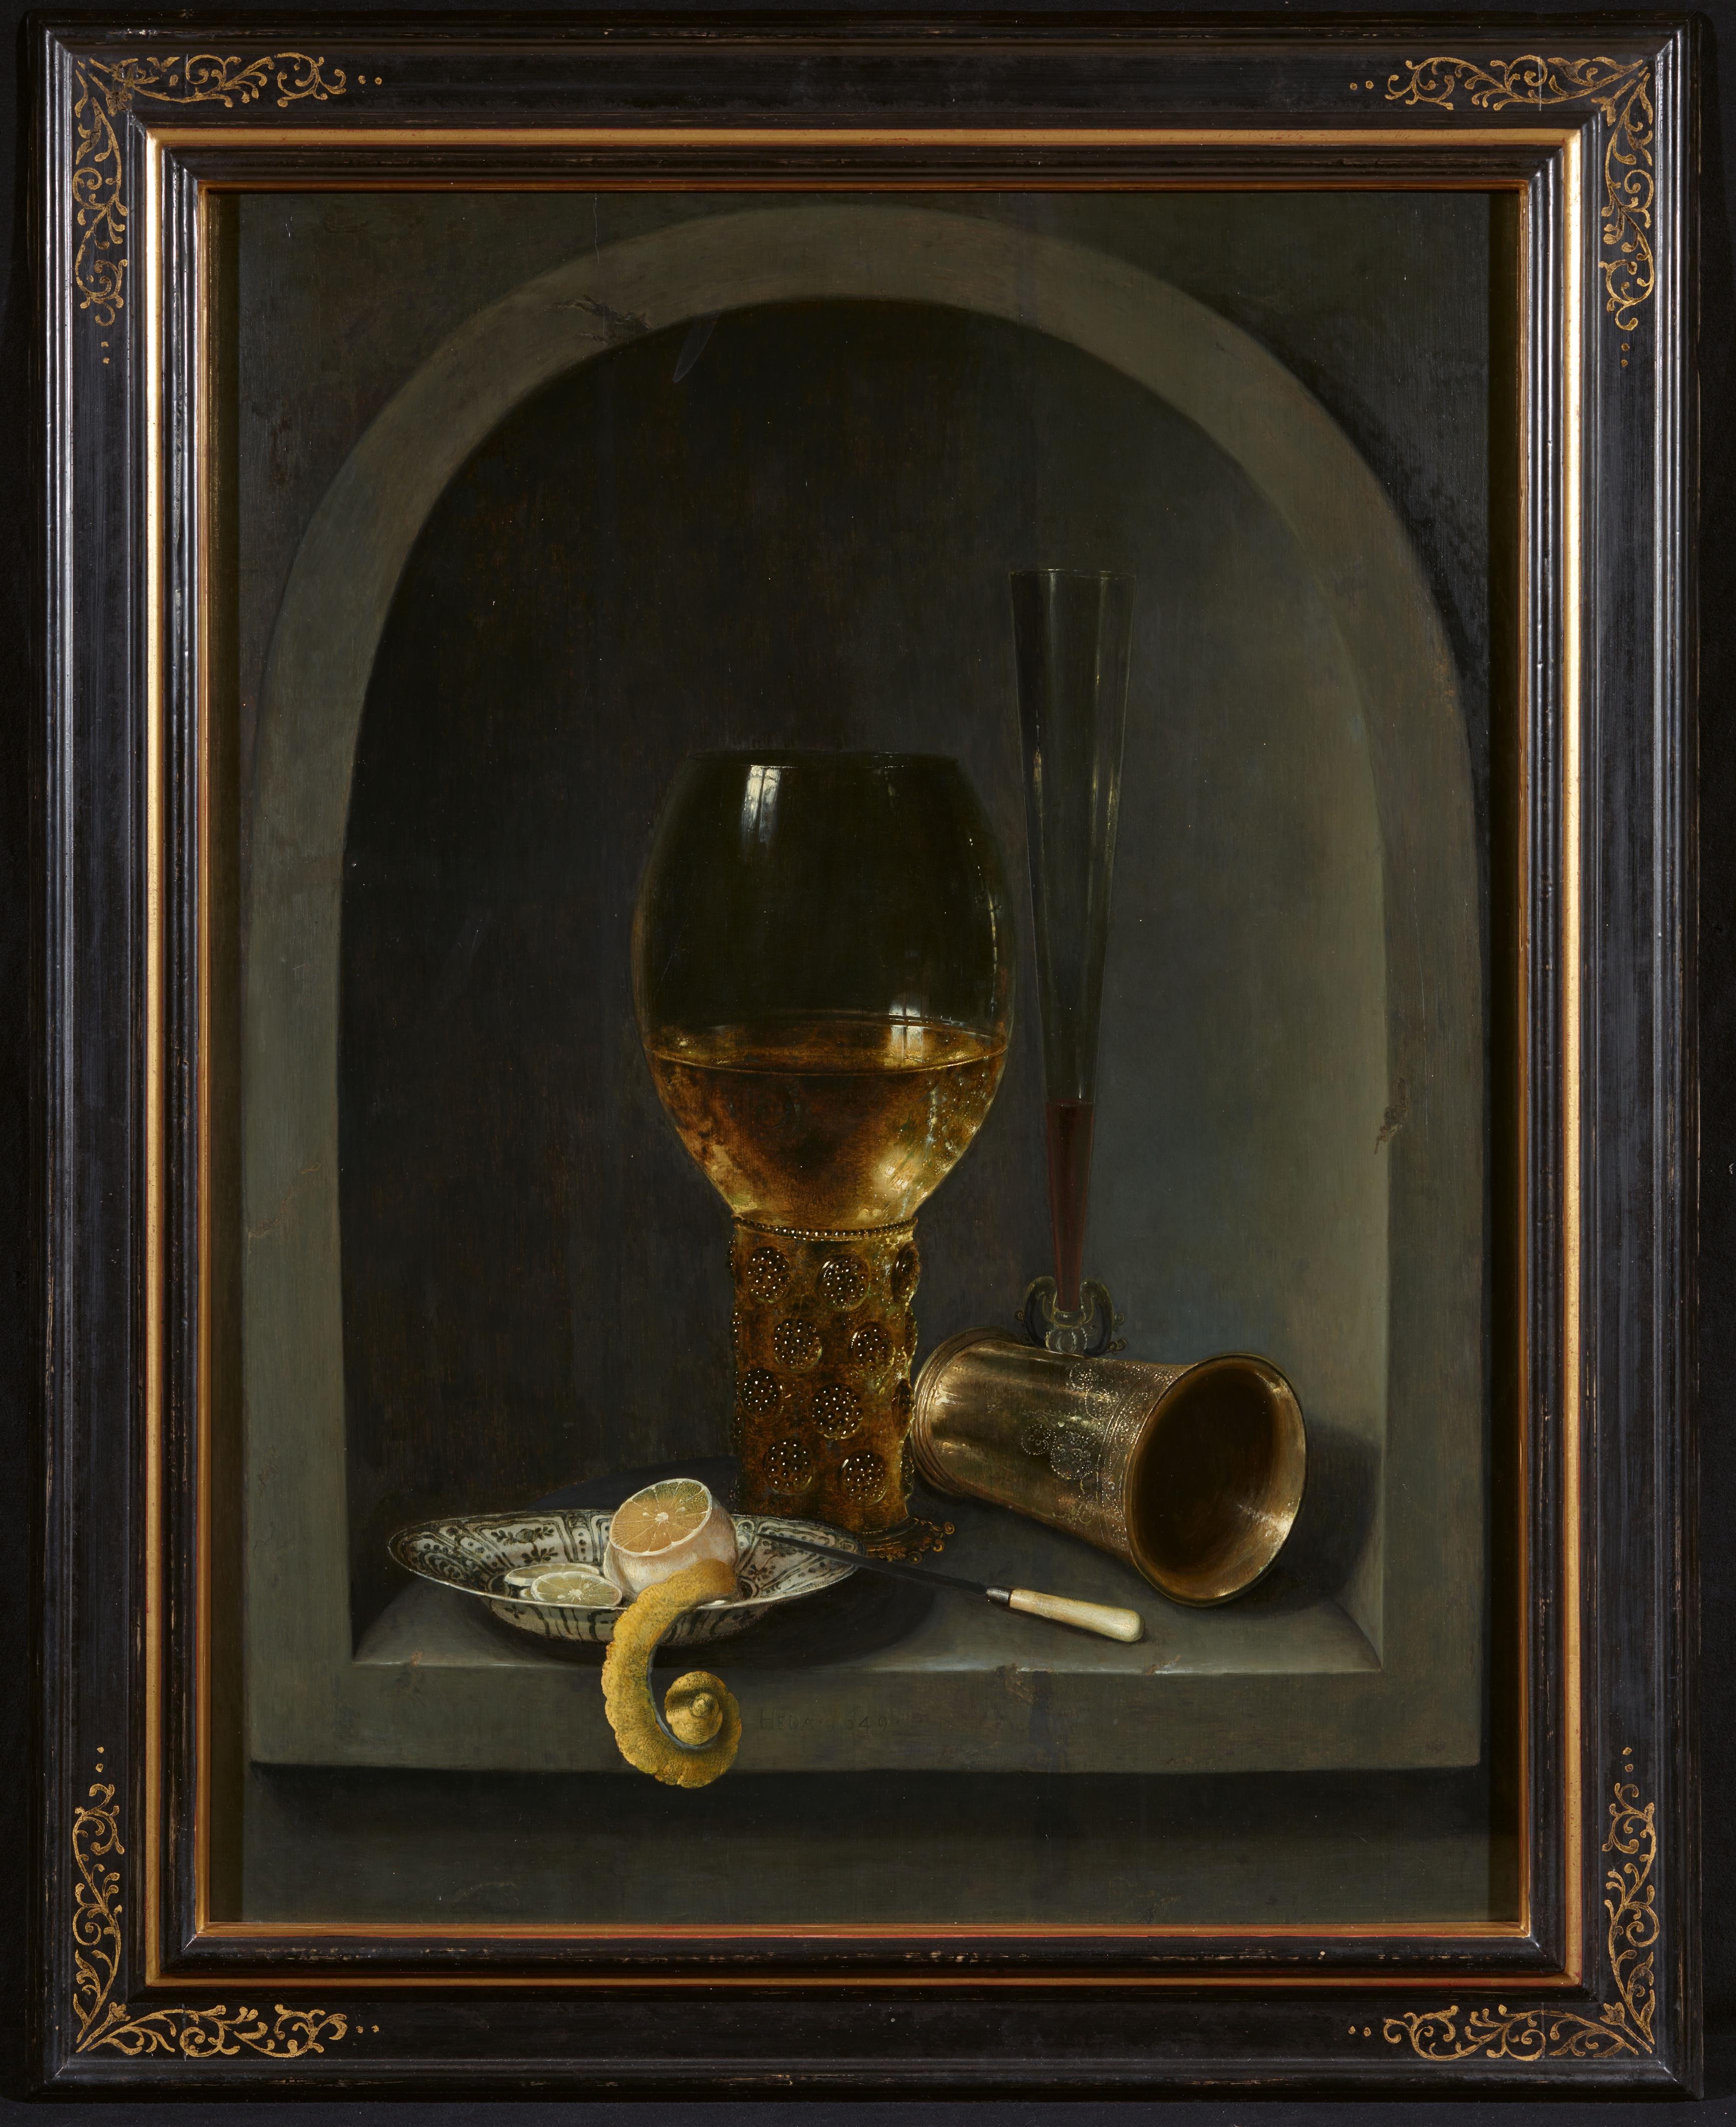 Willem Claesz. Heda - Stillleben mit Römer, venezianischem Flötenglas, einem Silberbecher neben einer blau-weißen Porzellanschale mit geschälter Zitrone und einem Messer, alles in einer Steinnische arrangiert - image-2